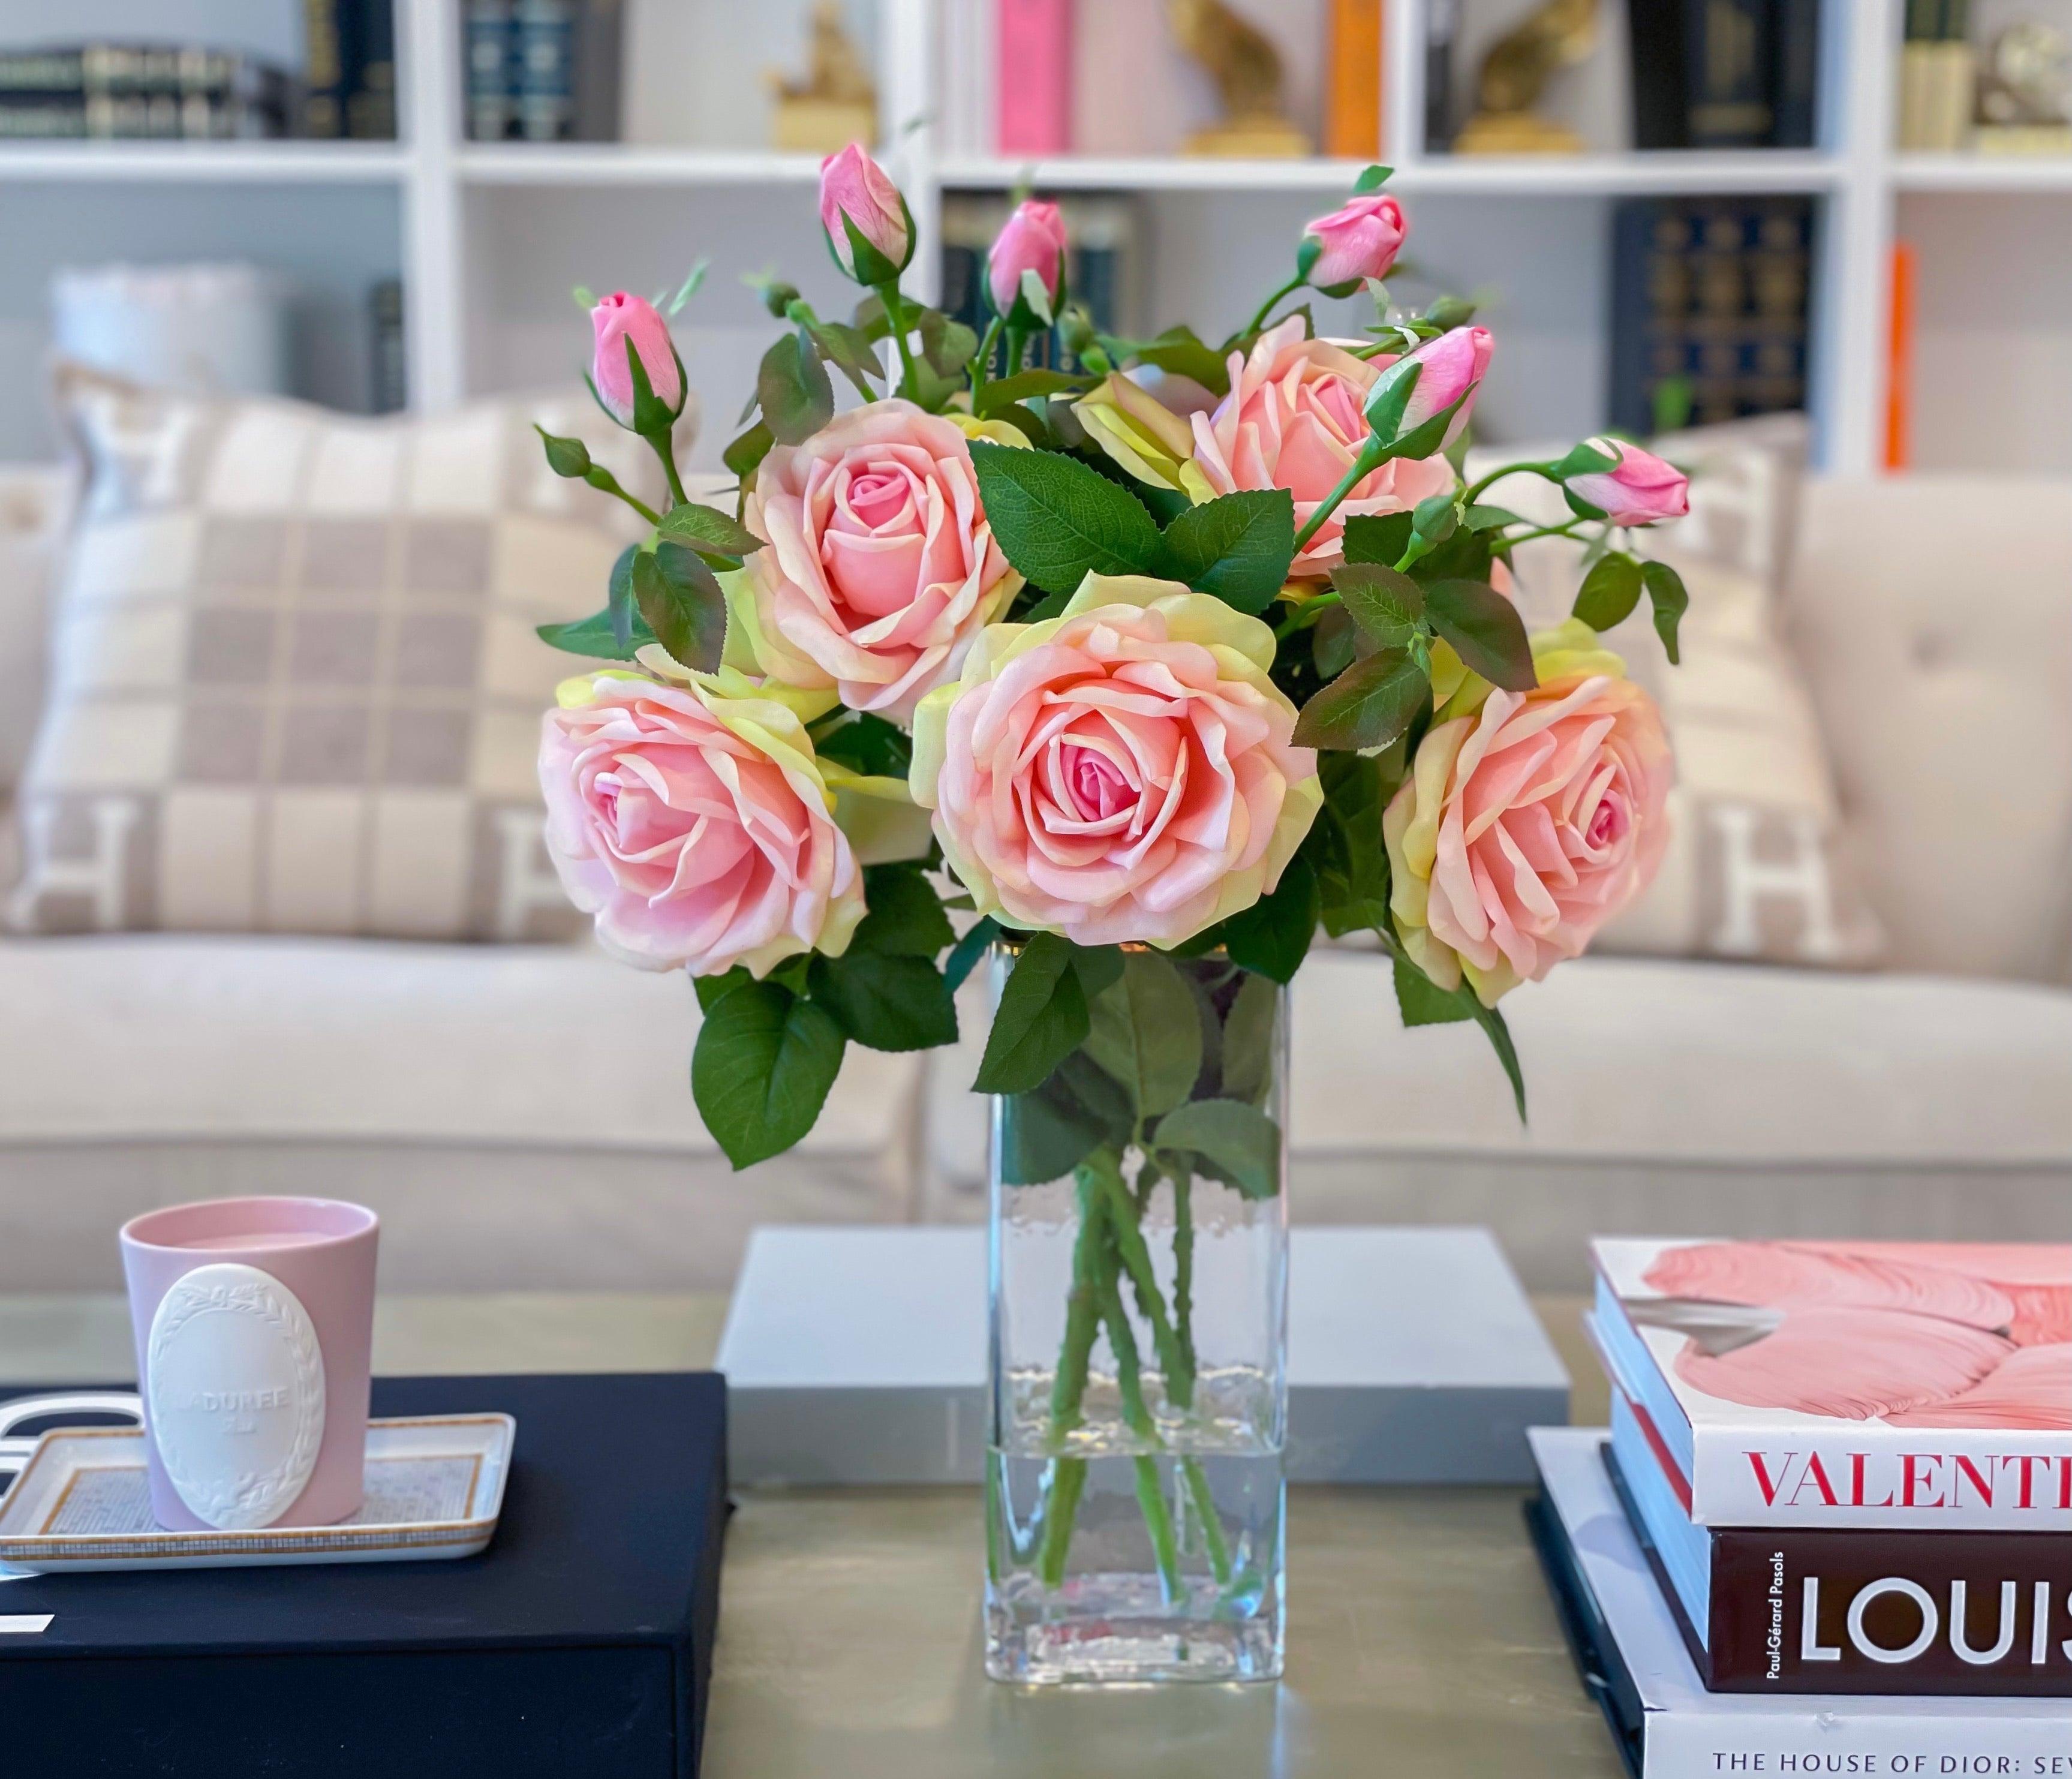 Slik Large Rose Tall Arrangement in Glass Vase – Flovery